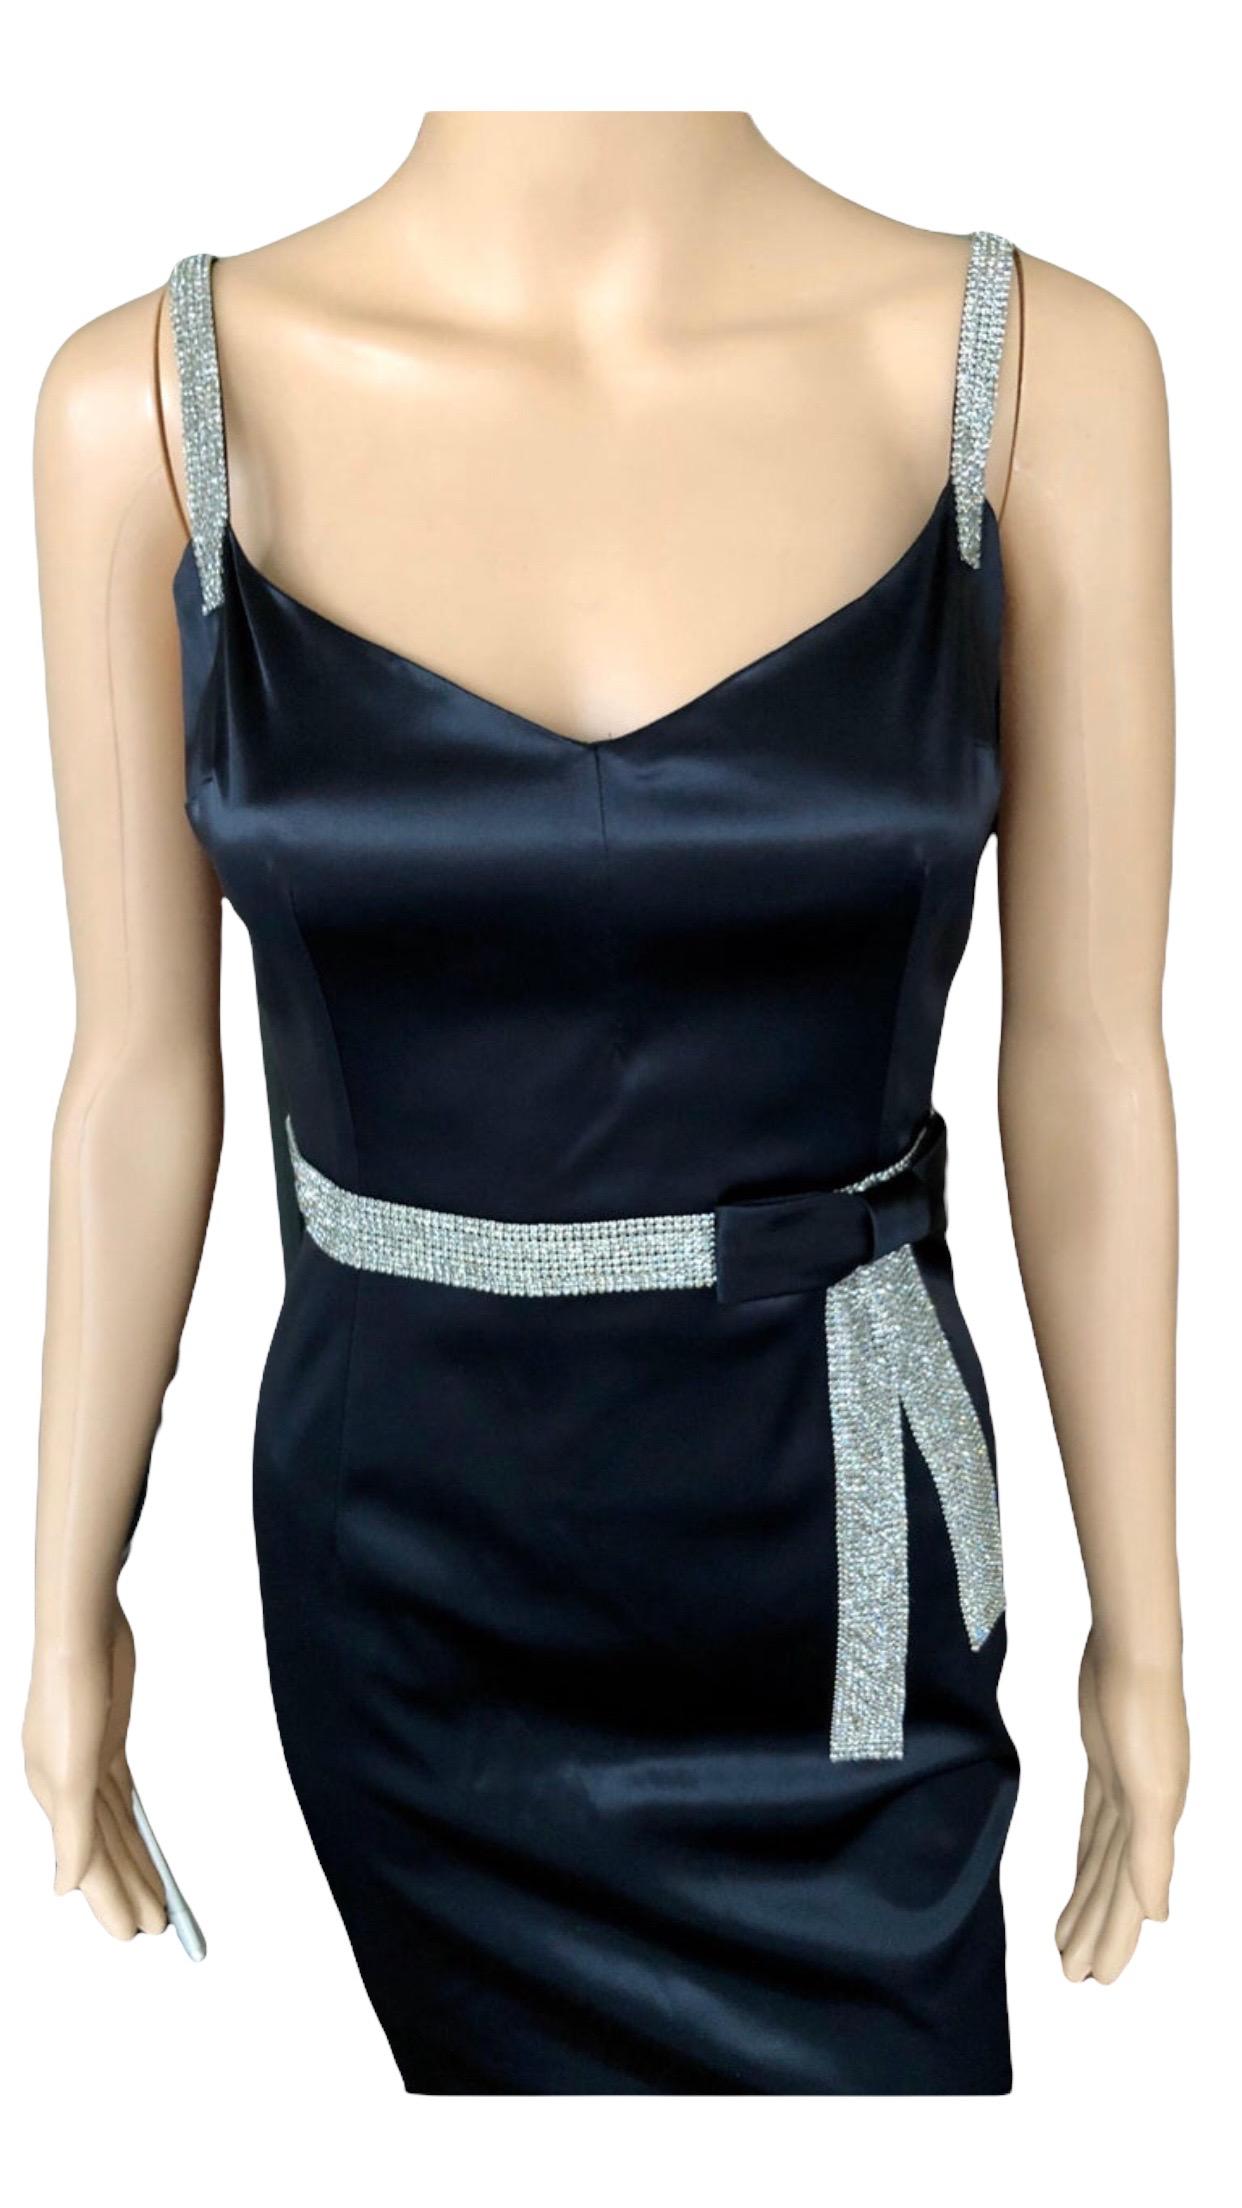 Dolce & Gabbana S/S 2004 Embellished Crystal Belt Satin Black Evening Dress Gown For Sale 1